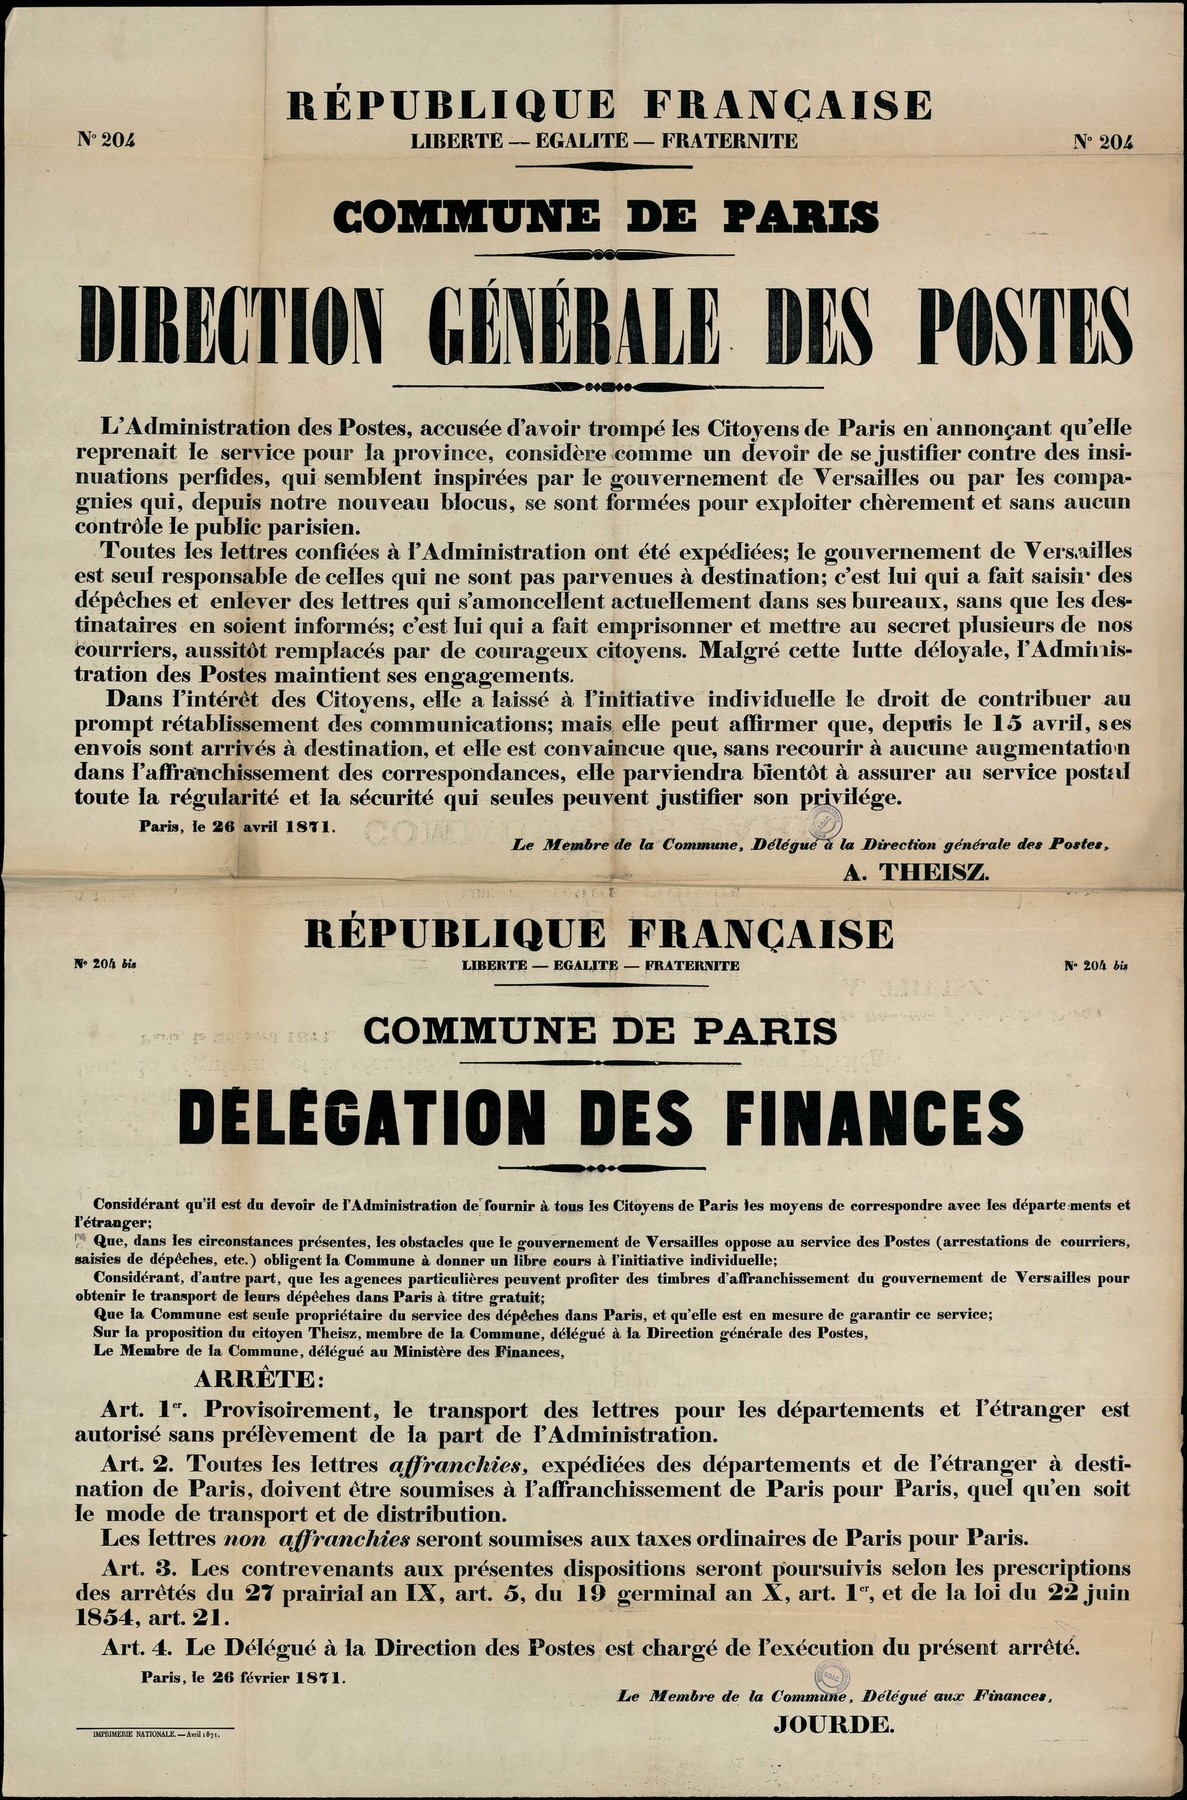 Affiches de la Commune de Paris N° 204 et 204 bis du 26 avril 1871 signée l'une par Theisz et l'autre par Jourde (source : La Contemporaine – Nanterre / argonnaute.parisnanterre.fr)